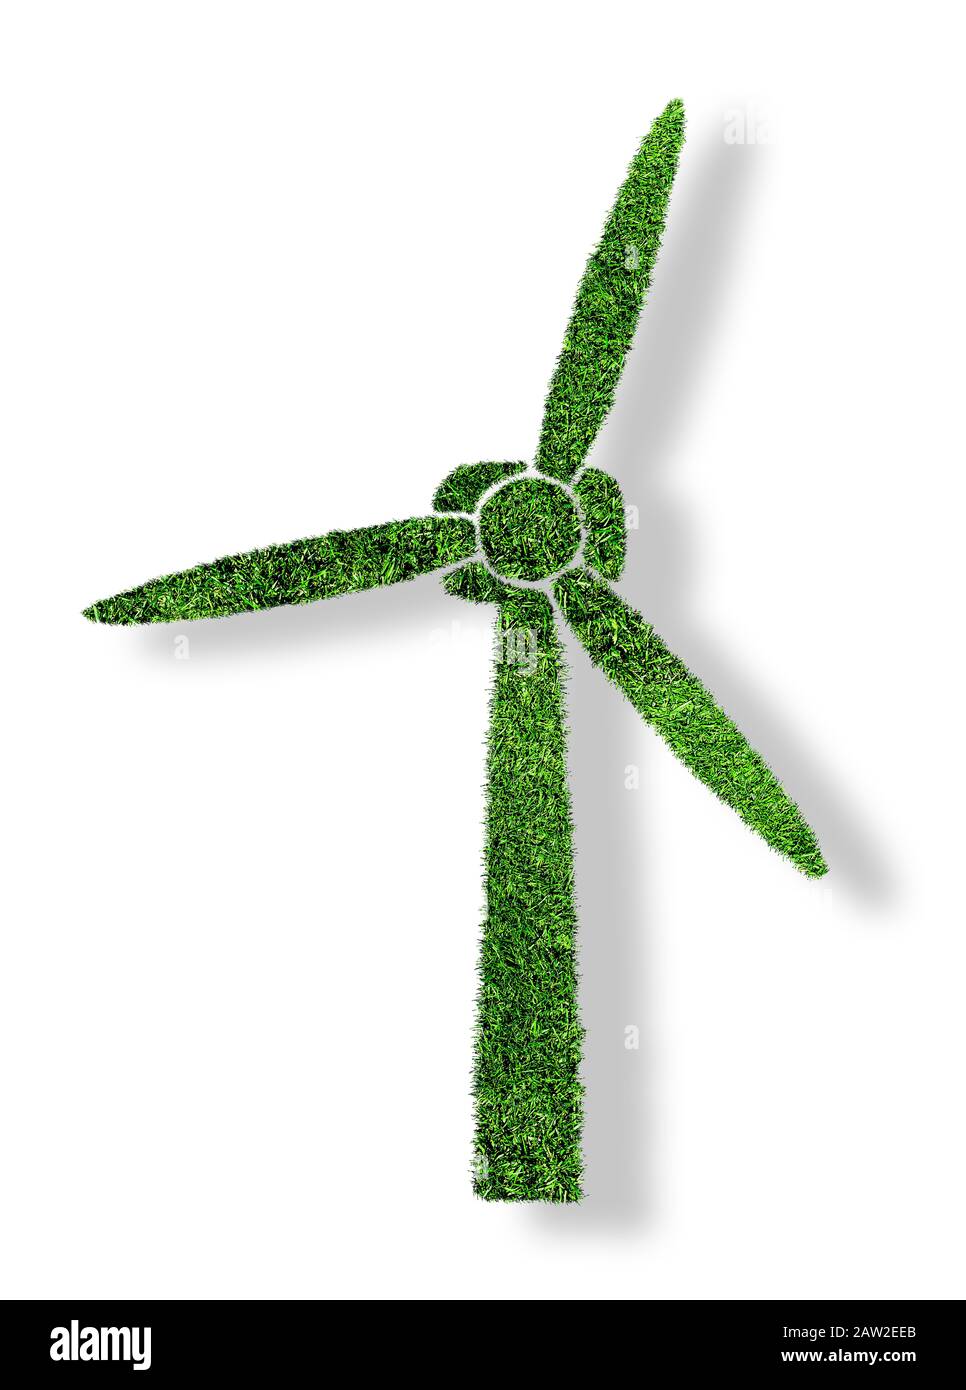 turbina eolica verde erba isolata su sfondo bianco, simbolo di concetto di energia rinnovabile e a basso impatto ambientale Foto Stock